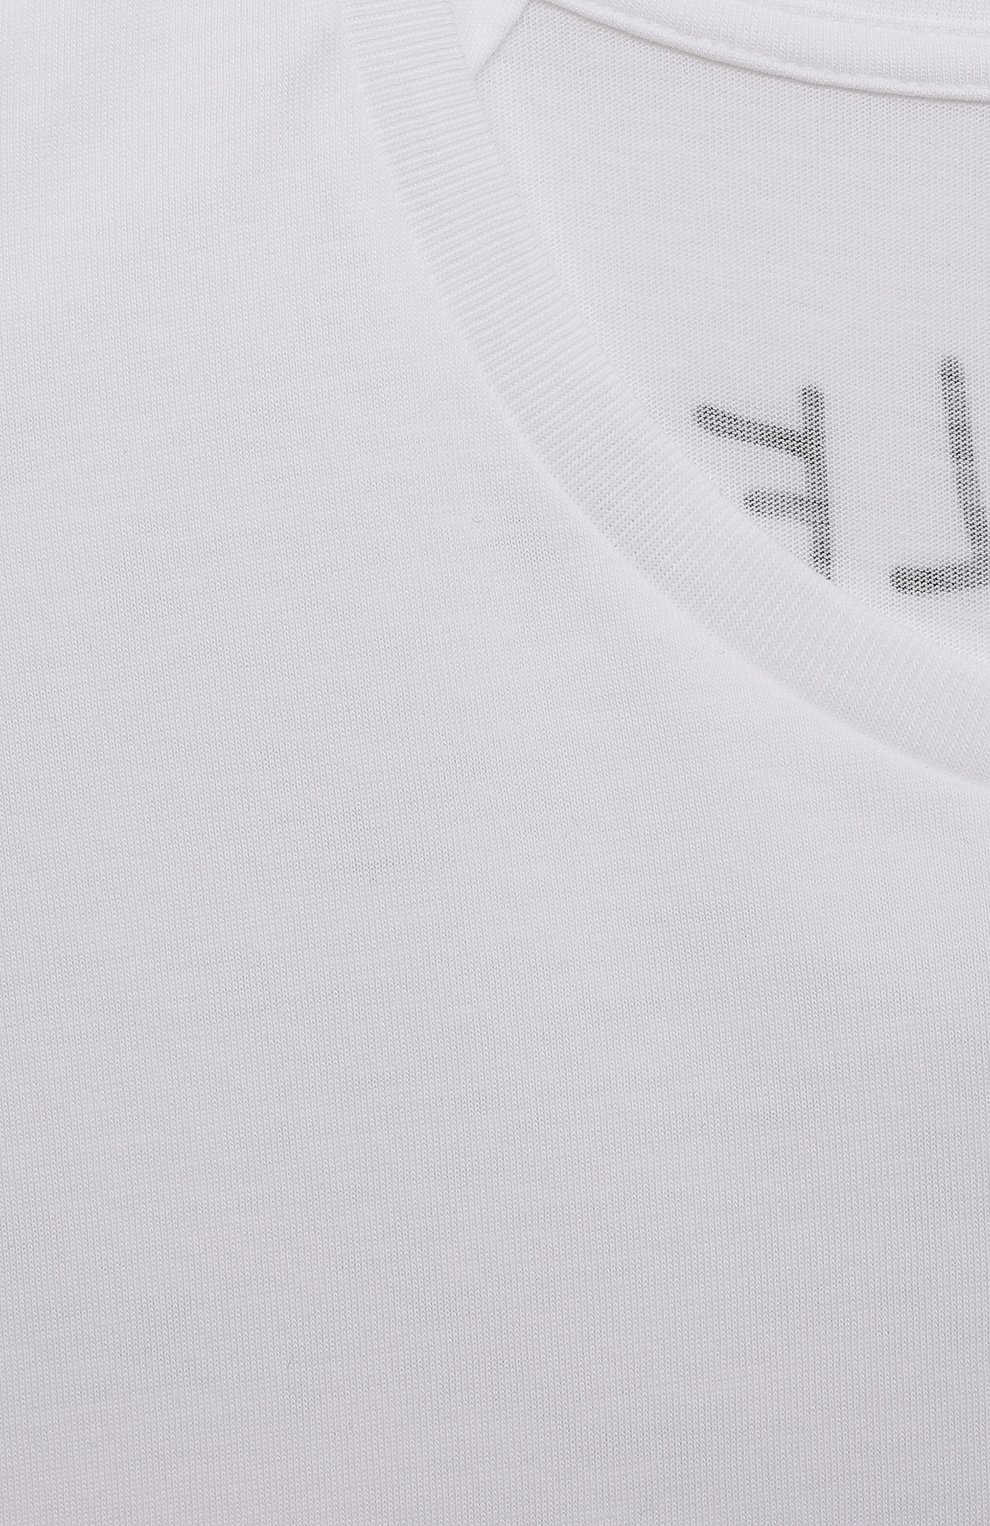 Детская хлопковая футболка MONCLER белого цвета, арт. H1-954-8C000-08-83907/8-10A | Фото 3 (Девочки Кросс-КТ: футболка-одежда; Материал внешний: Хлопок; Ростовка одежда: 10 - 11 лет | 140 - 146см, 8 лет | 128 см)